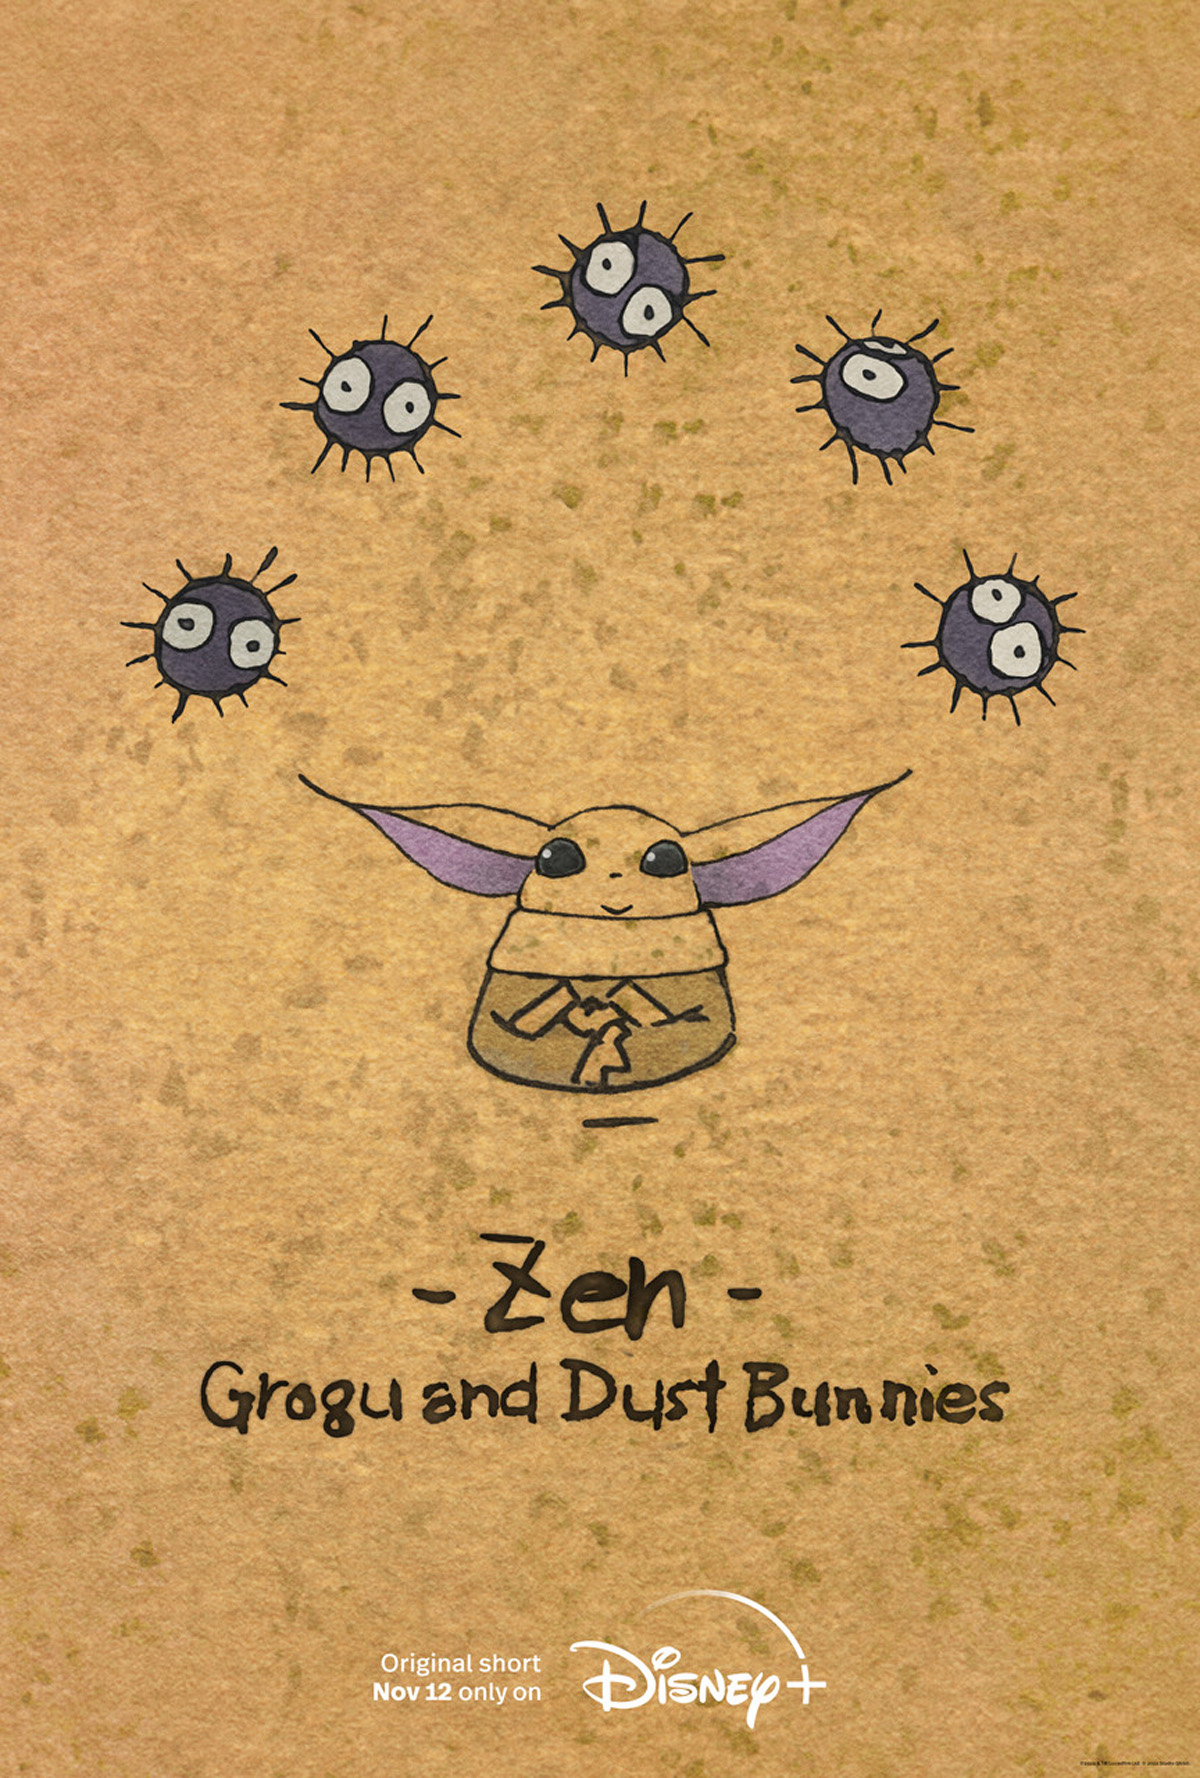 Visuel clé pour le court métrage d'animation Zen - Grogu and Dust Bunnies. 